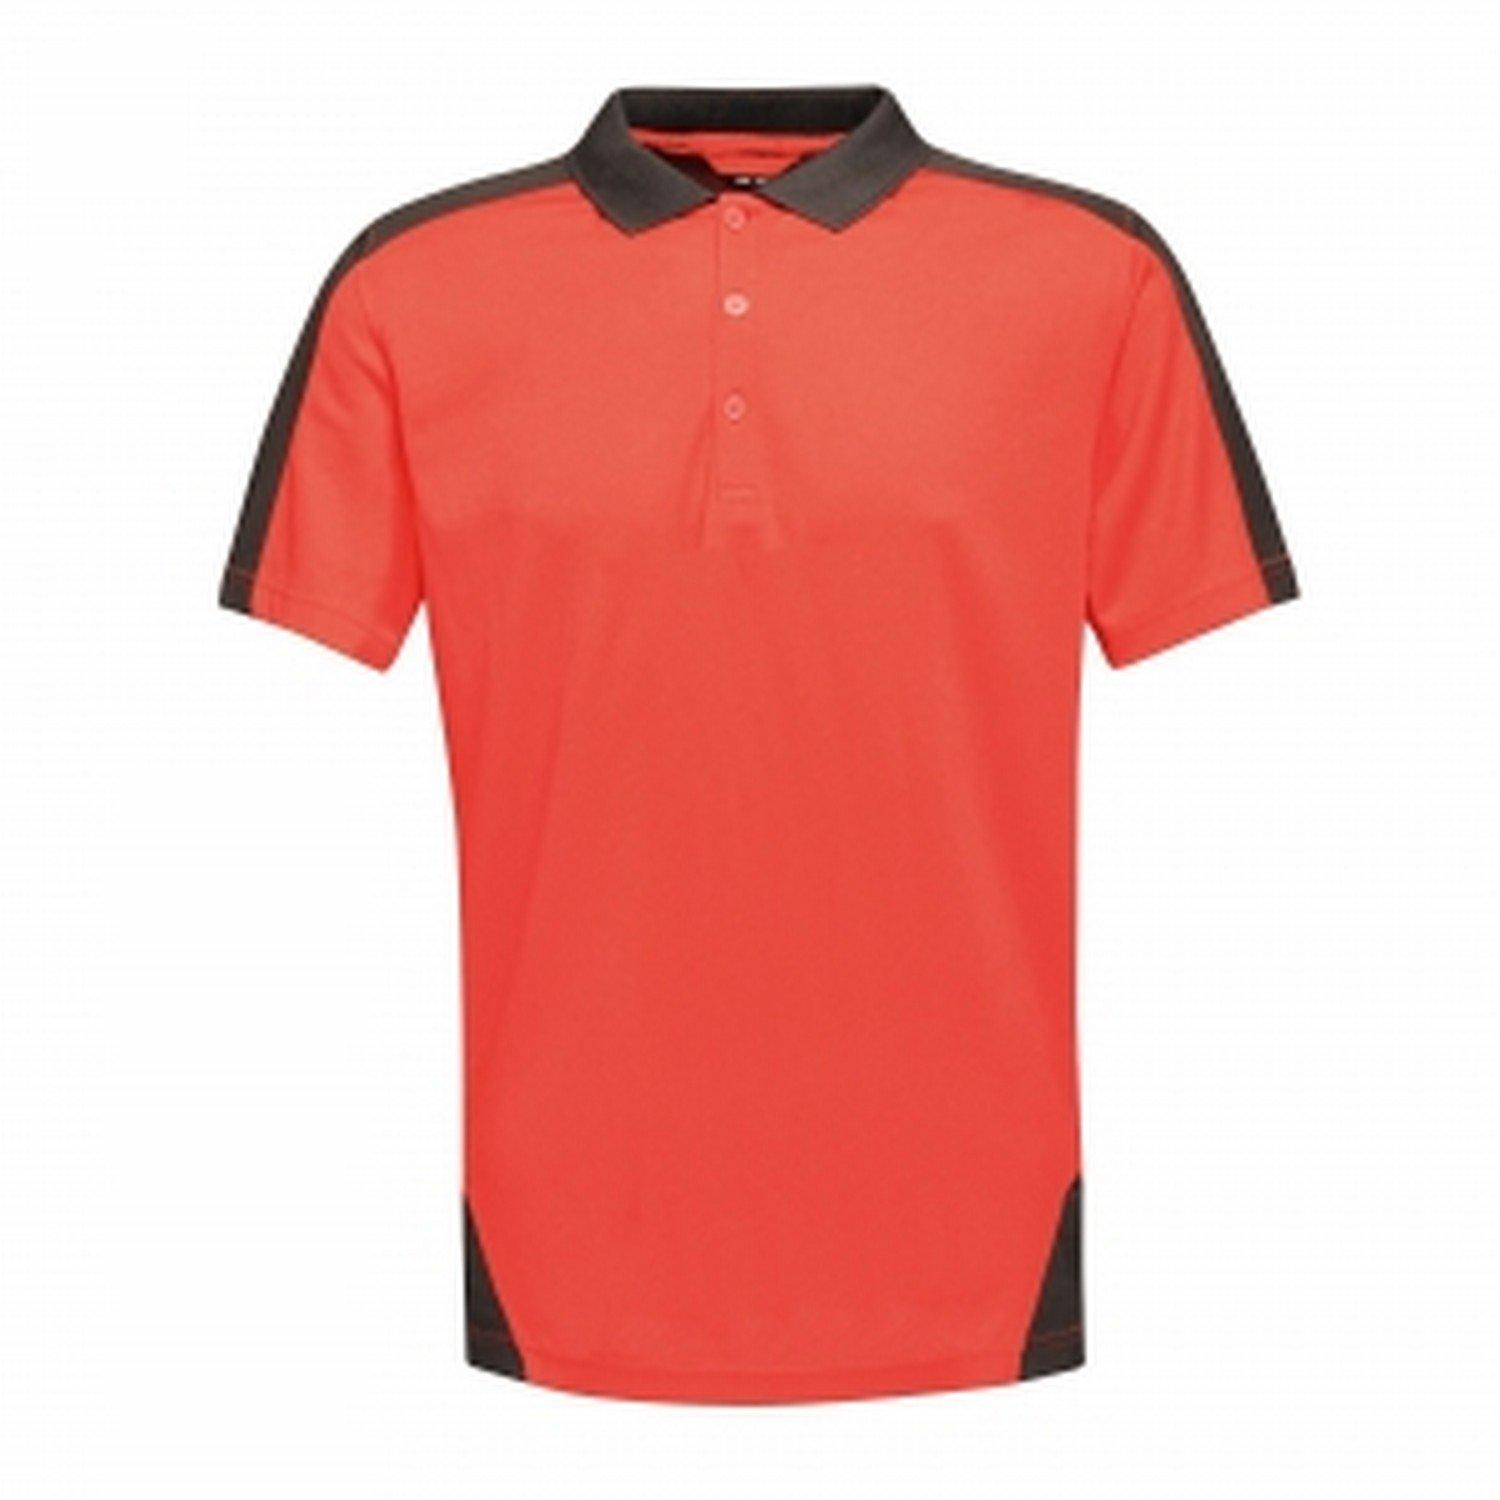 Poloshirt Contrast Coolweave Herren Rot Bunt M von Regatta